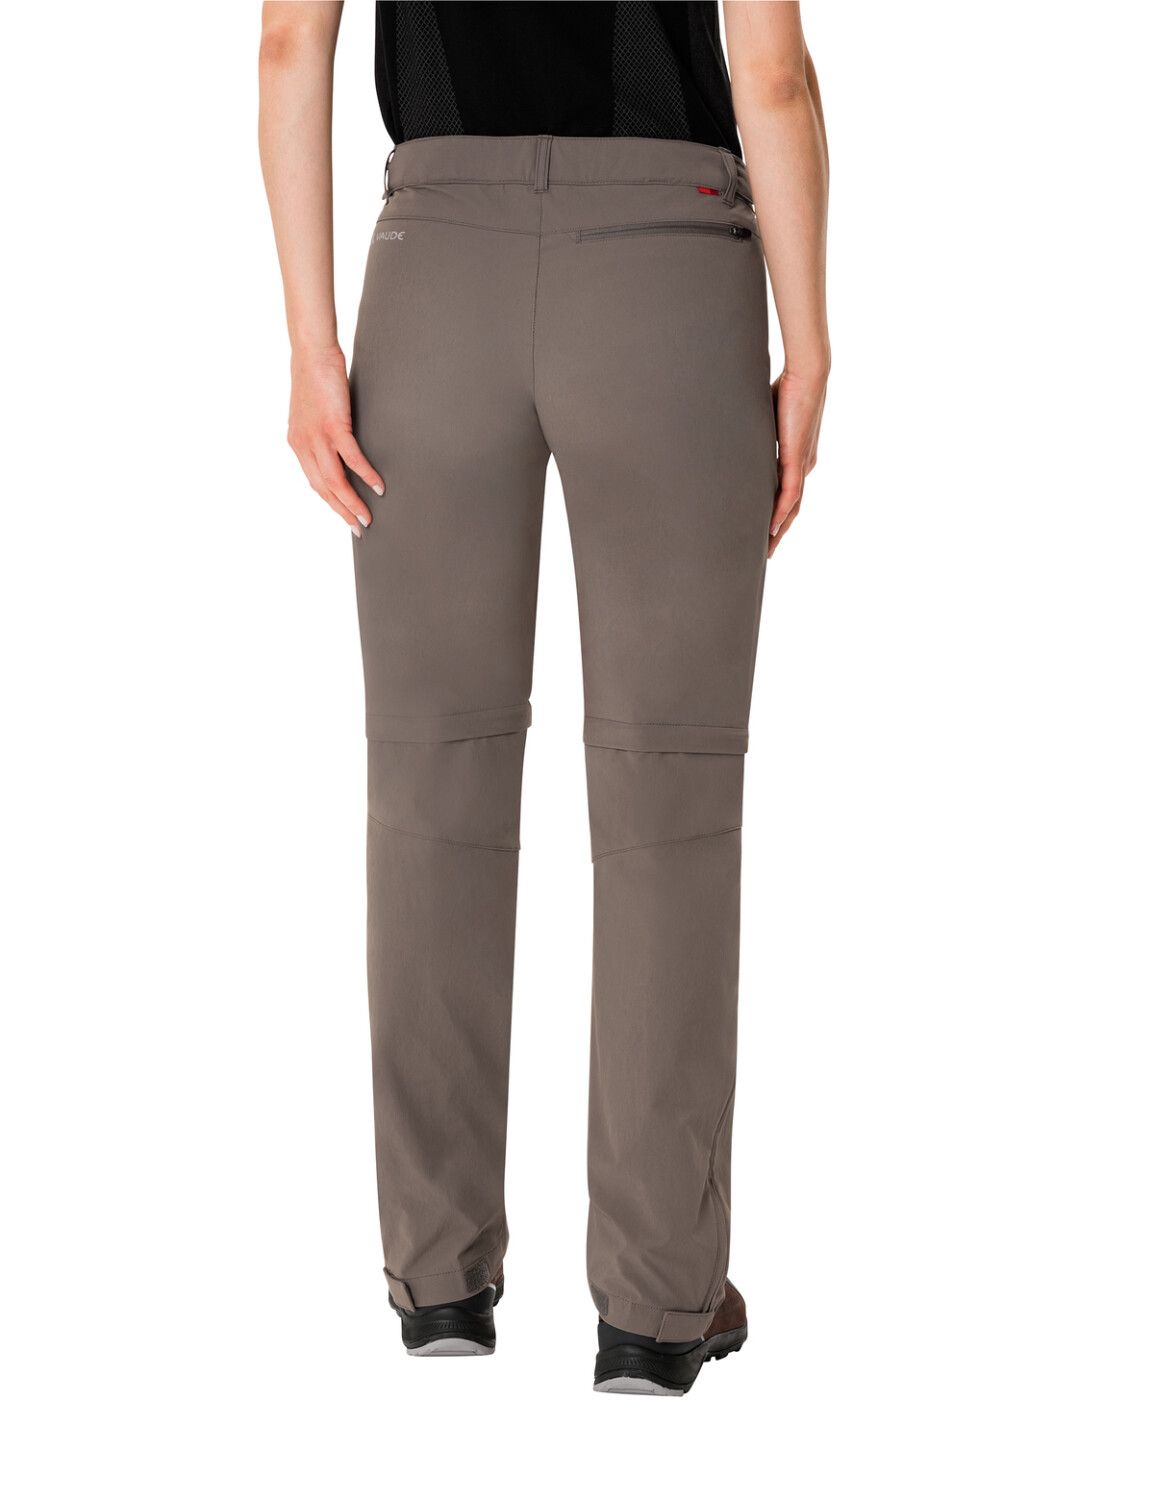 VAUDE Women's Farley Stretch ZO T-Zip Pants (Bild 36)